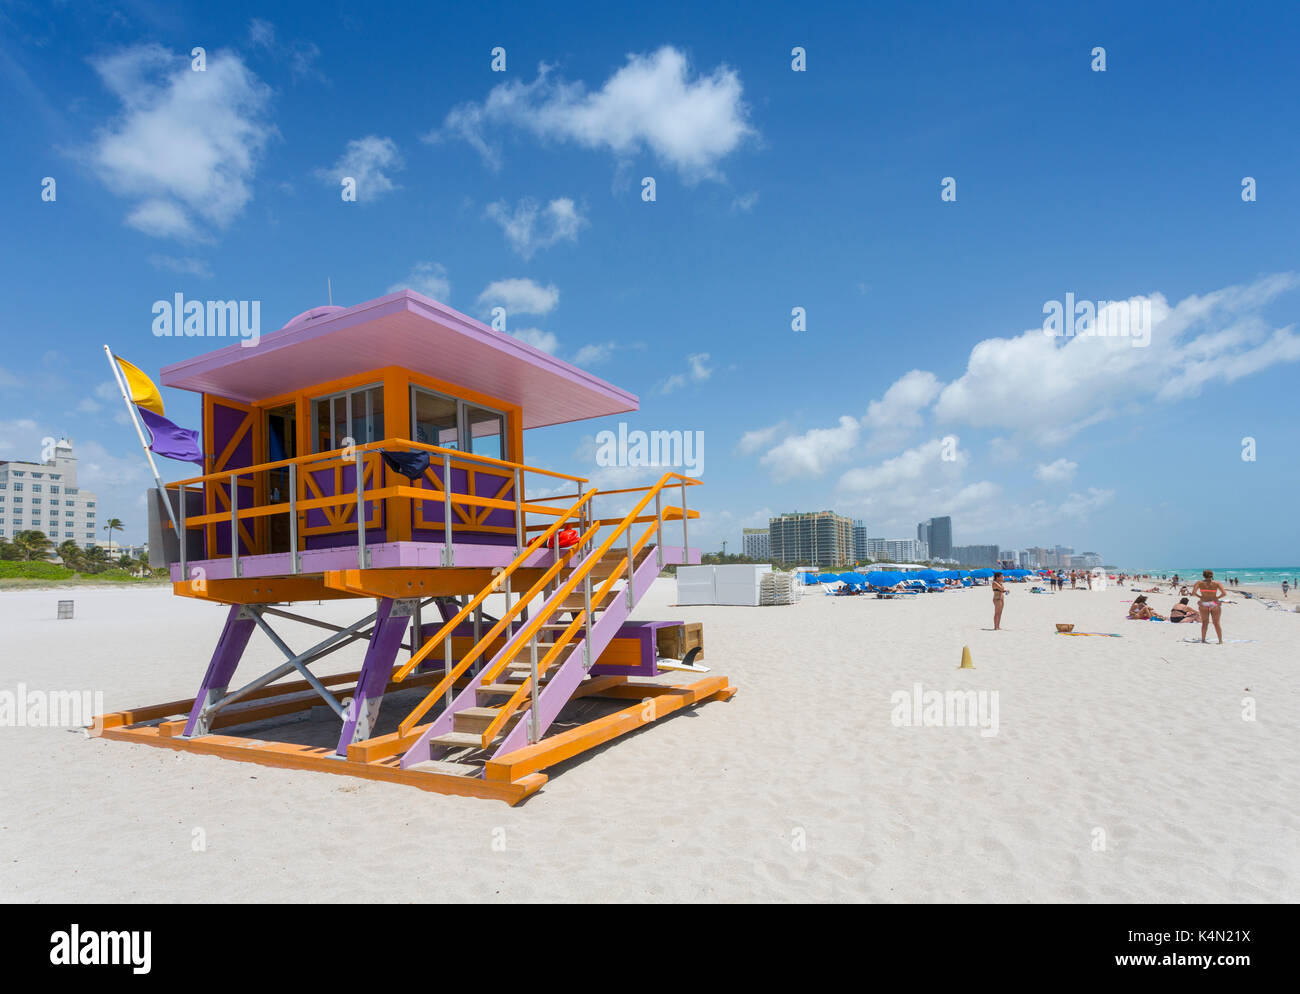 Rettungsschwimmer Wachturm am Strand von South Beach in Miami Beach, Miami,  Florida, Vereinigte Staaten von Amerika, Nordamerika Stockfotografie - Alamy